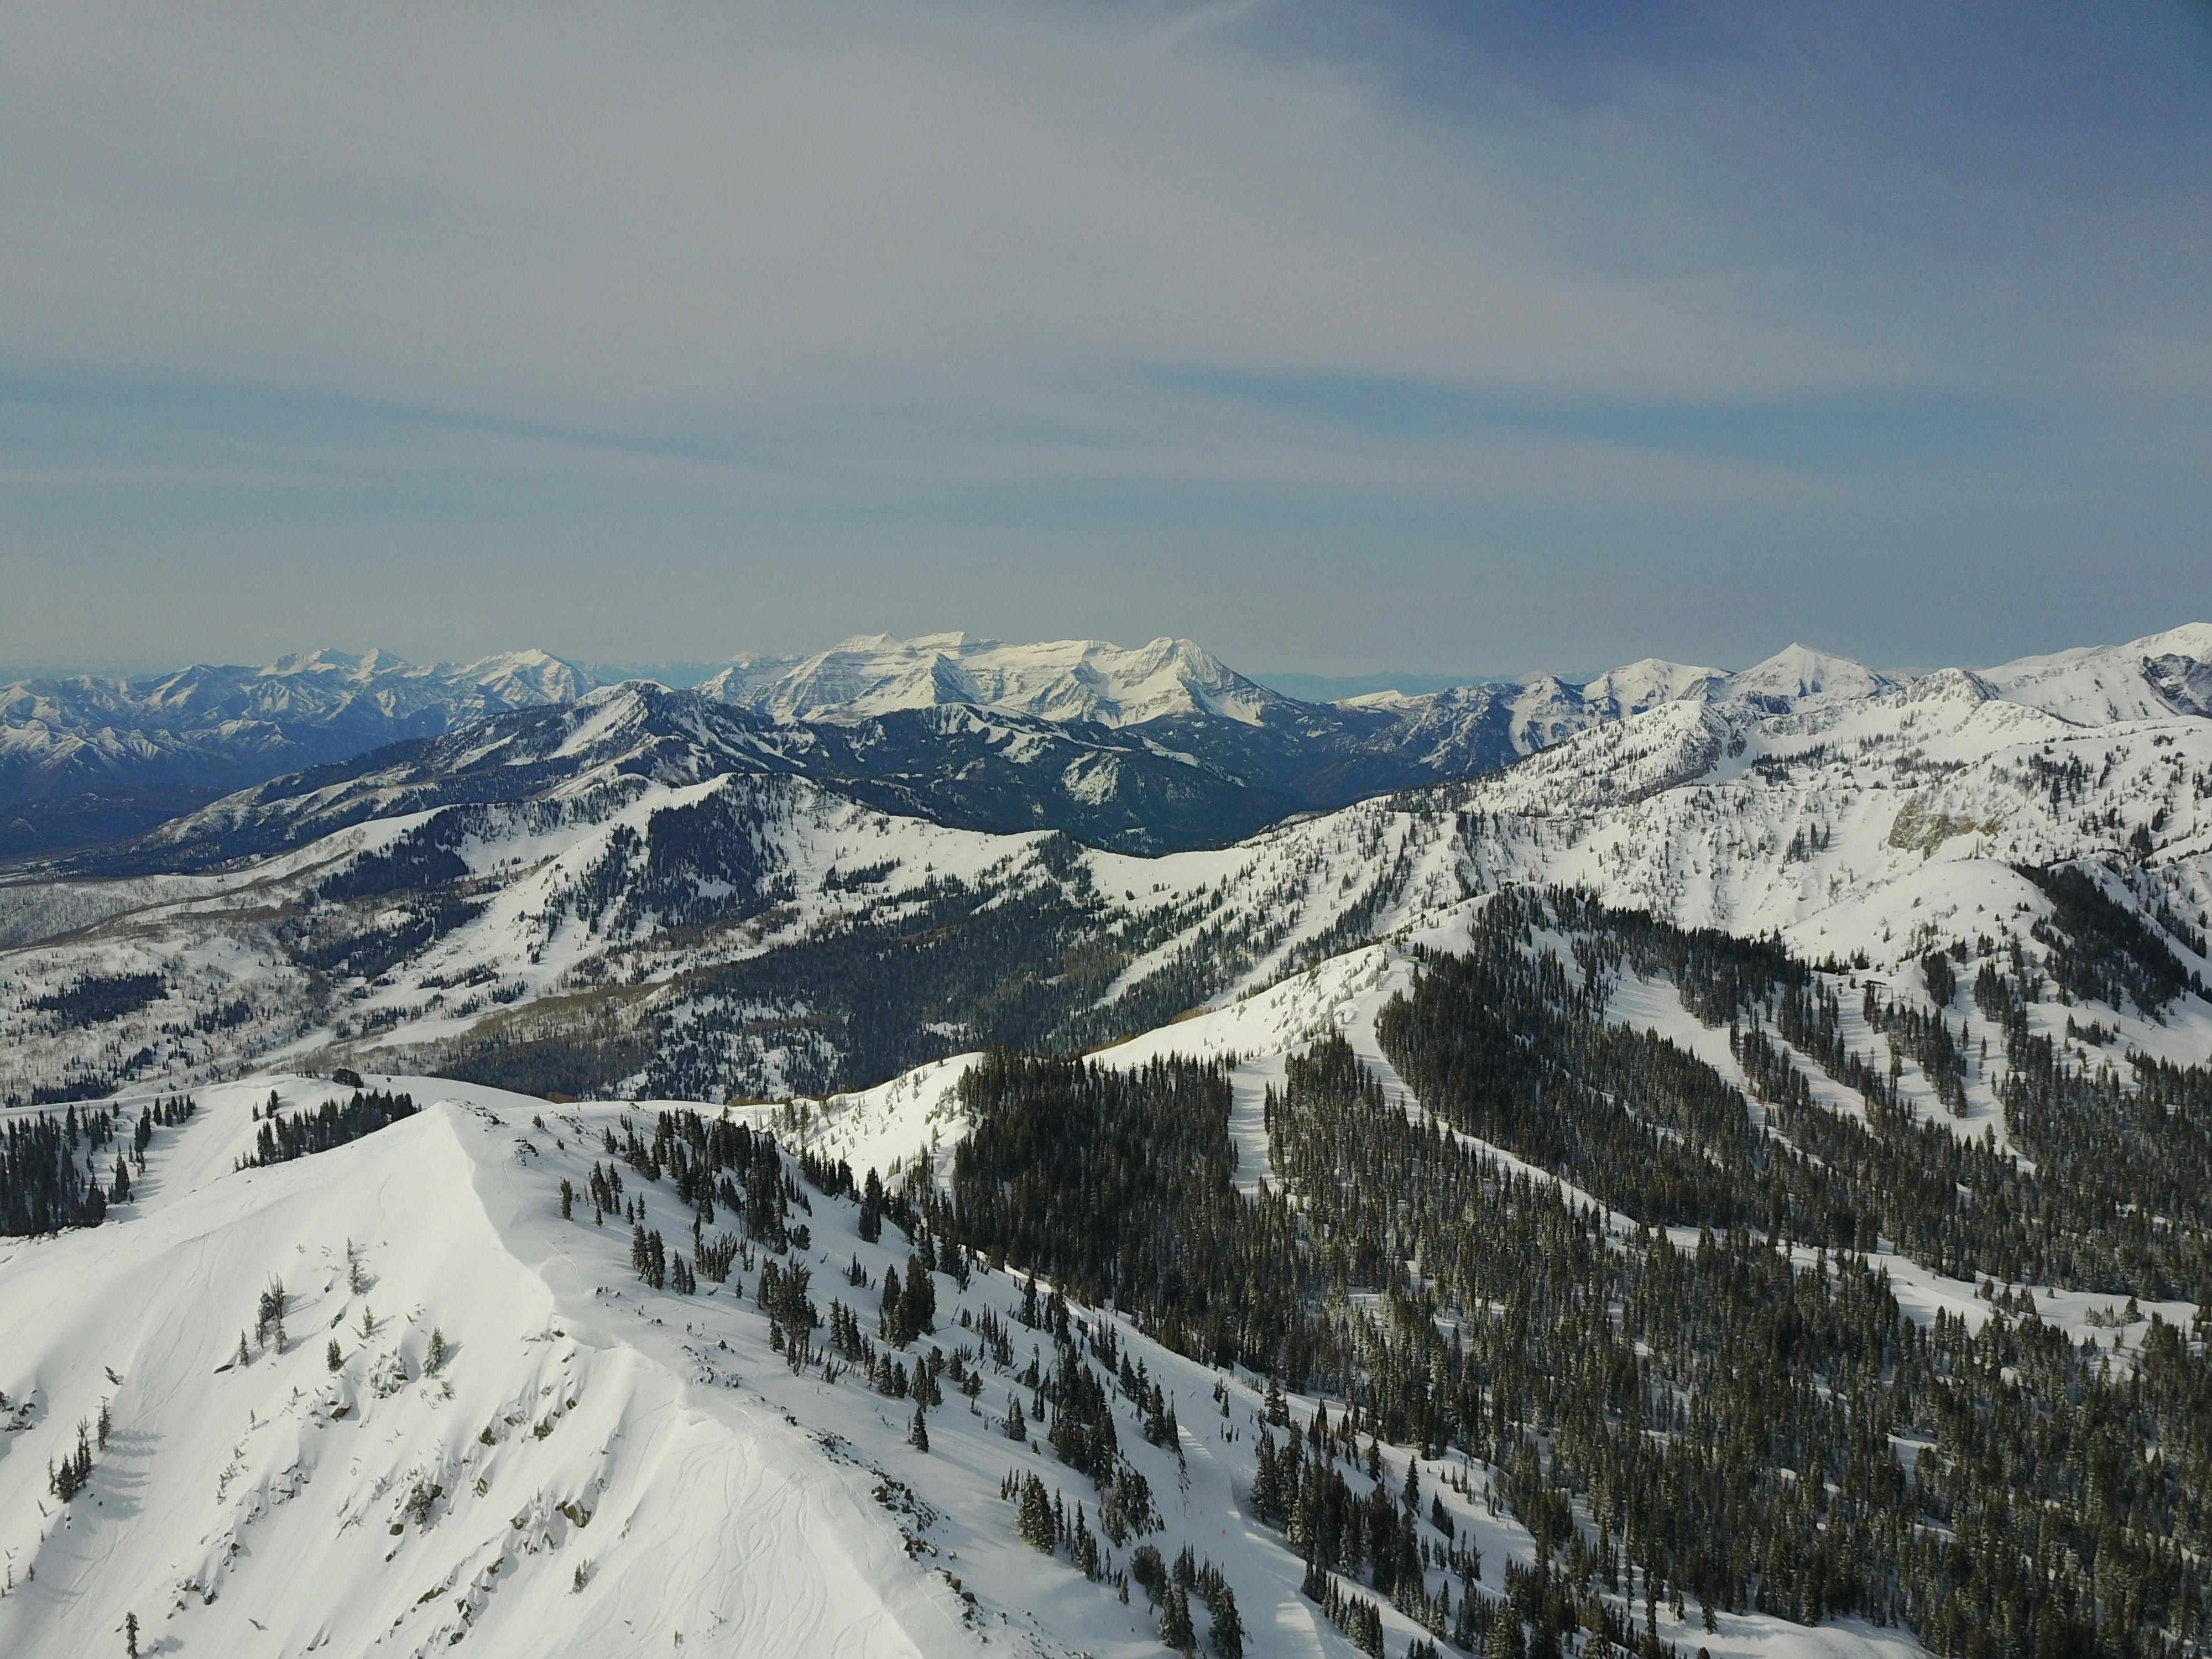 Aerial view of several snowy peaks.